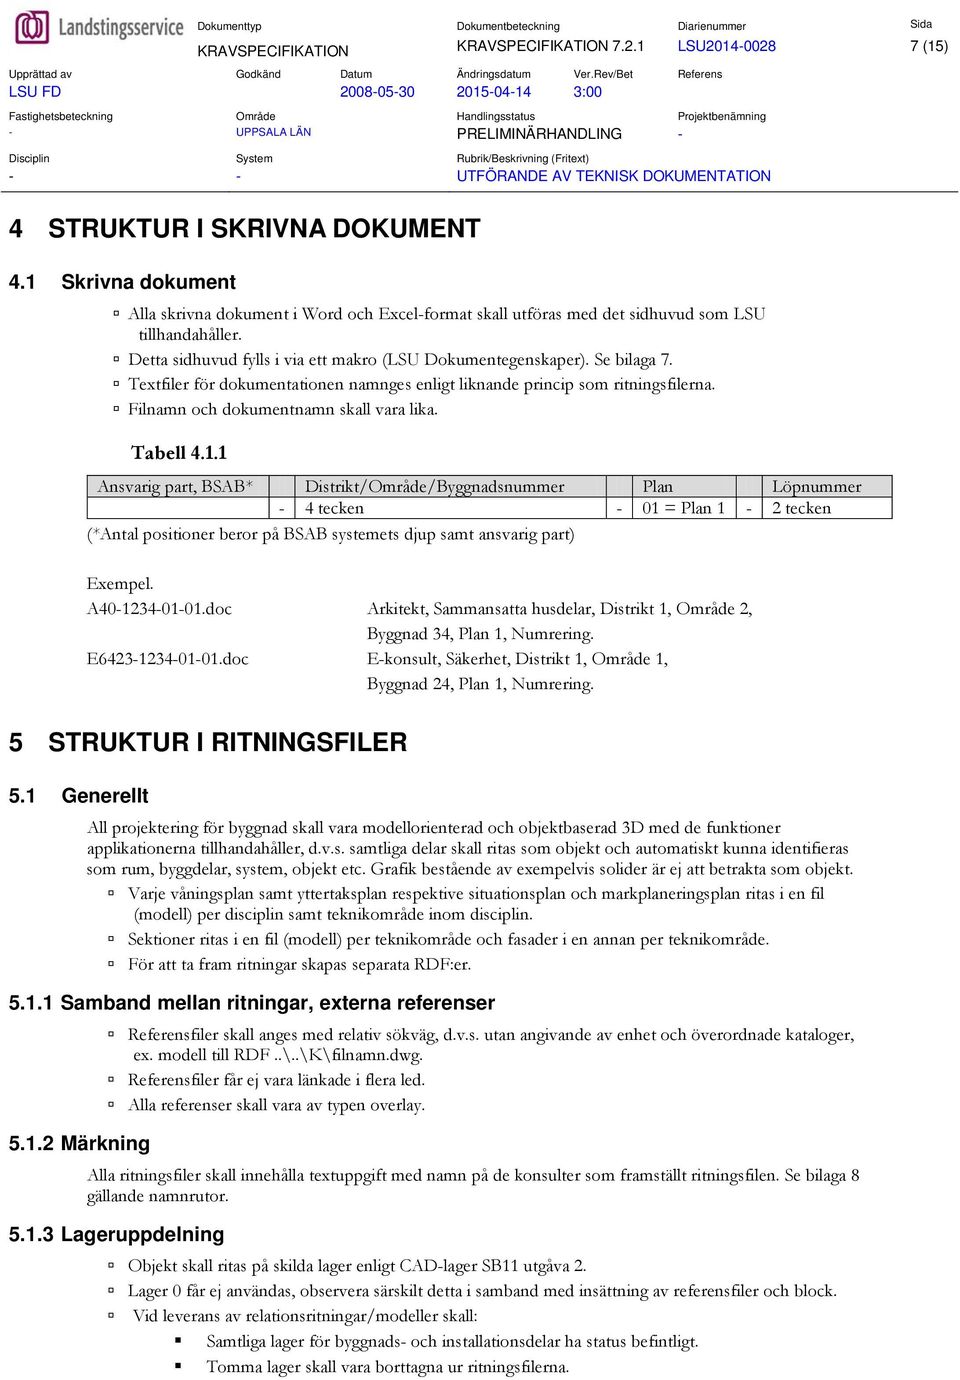 1 Skrivna dokument Alla skrivna dokument i Word och Excel-format skall utföras med det sidhuvud som LSU tillhandahåller. Detta sidhuvud fylls i via ett makro (LSU Dokumentegenskaper). Se bilaga 7.